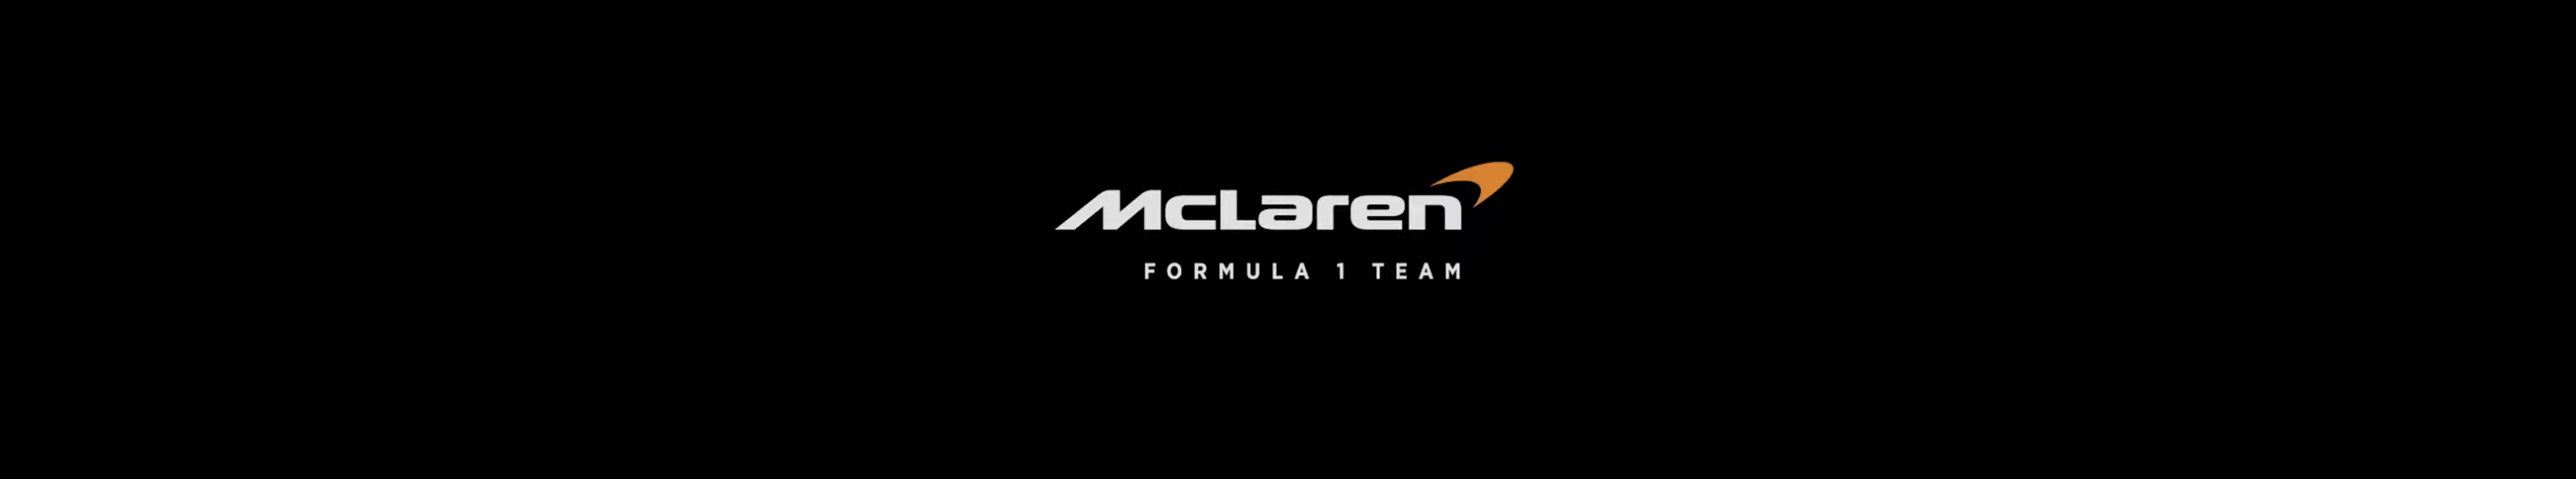 mclaren f1 team logo